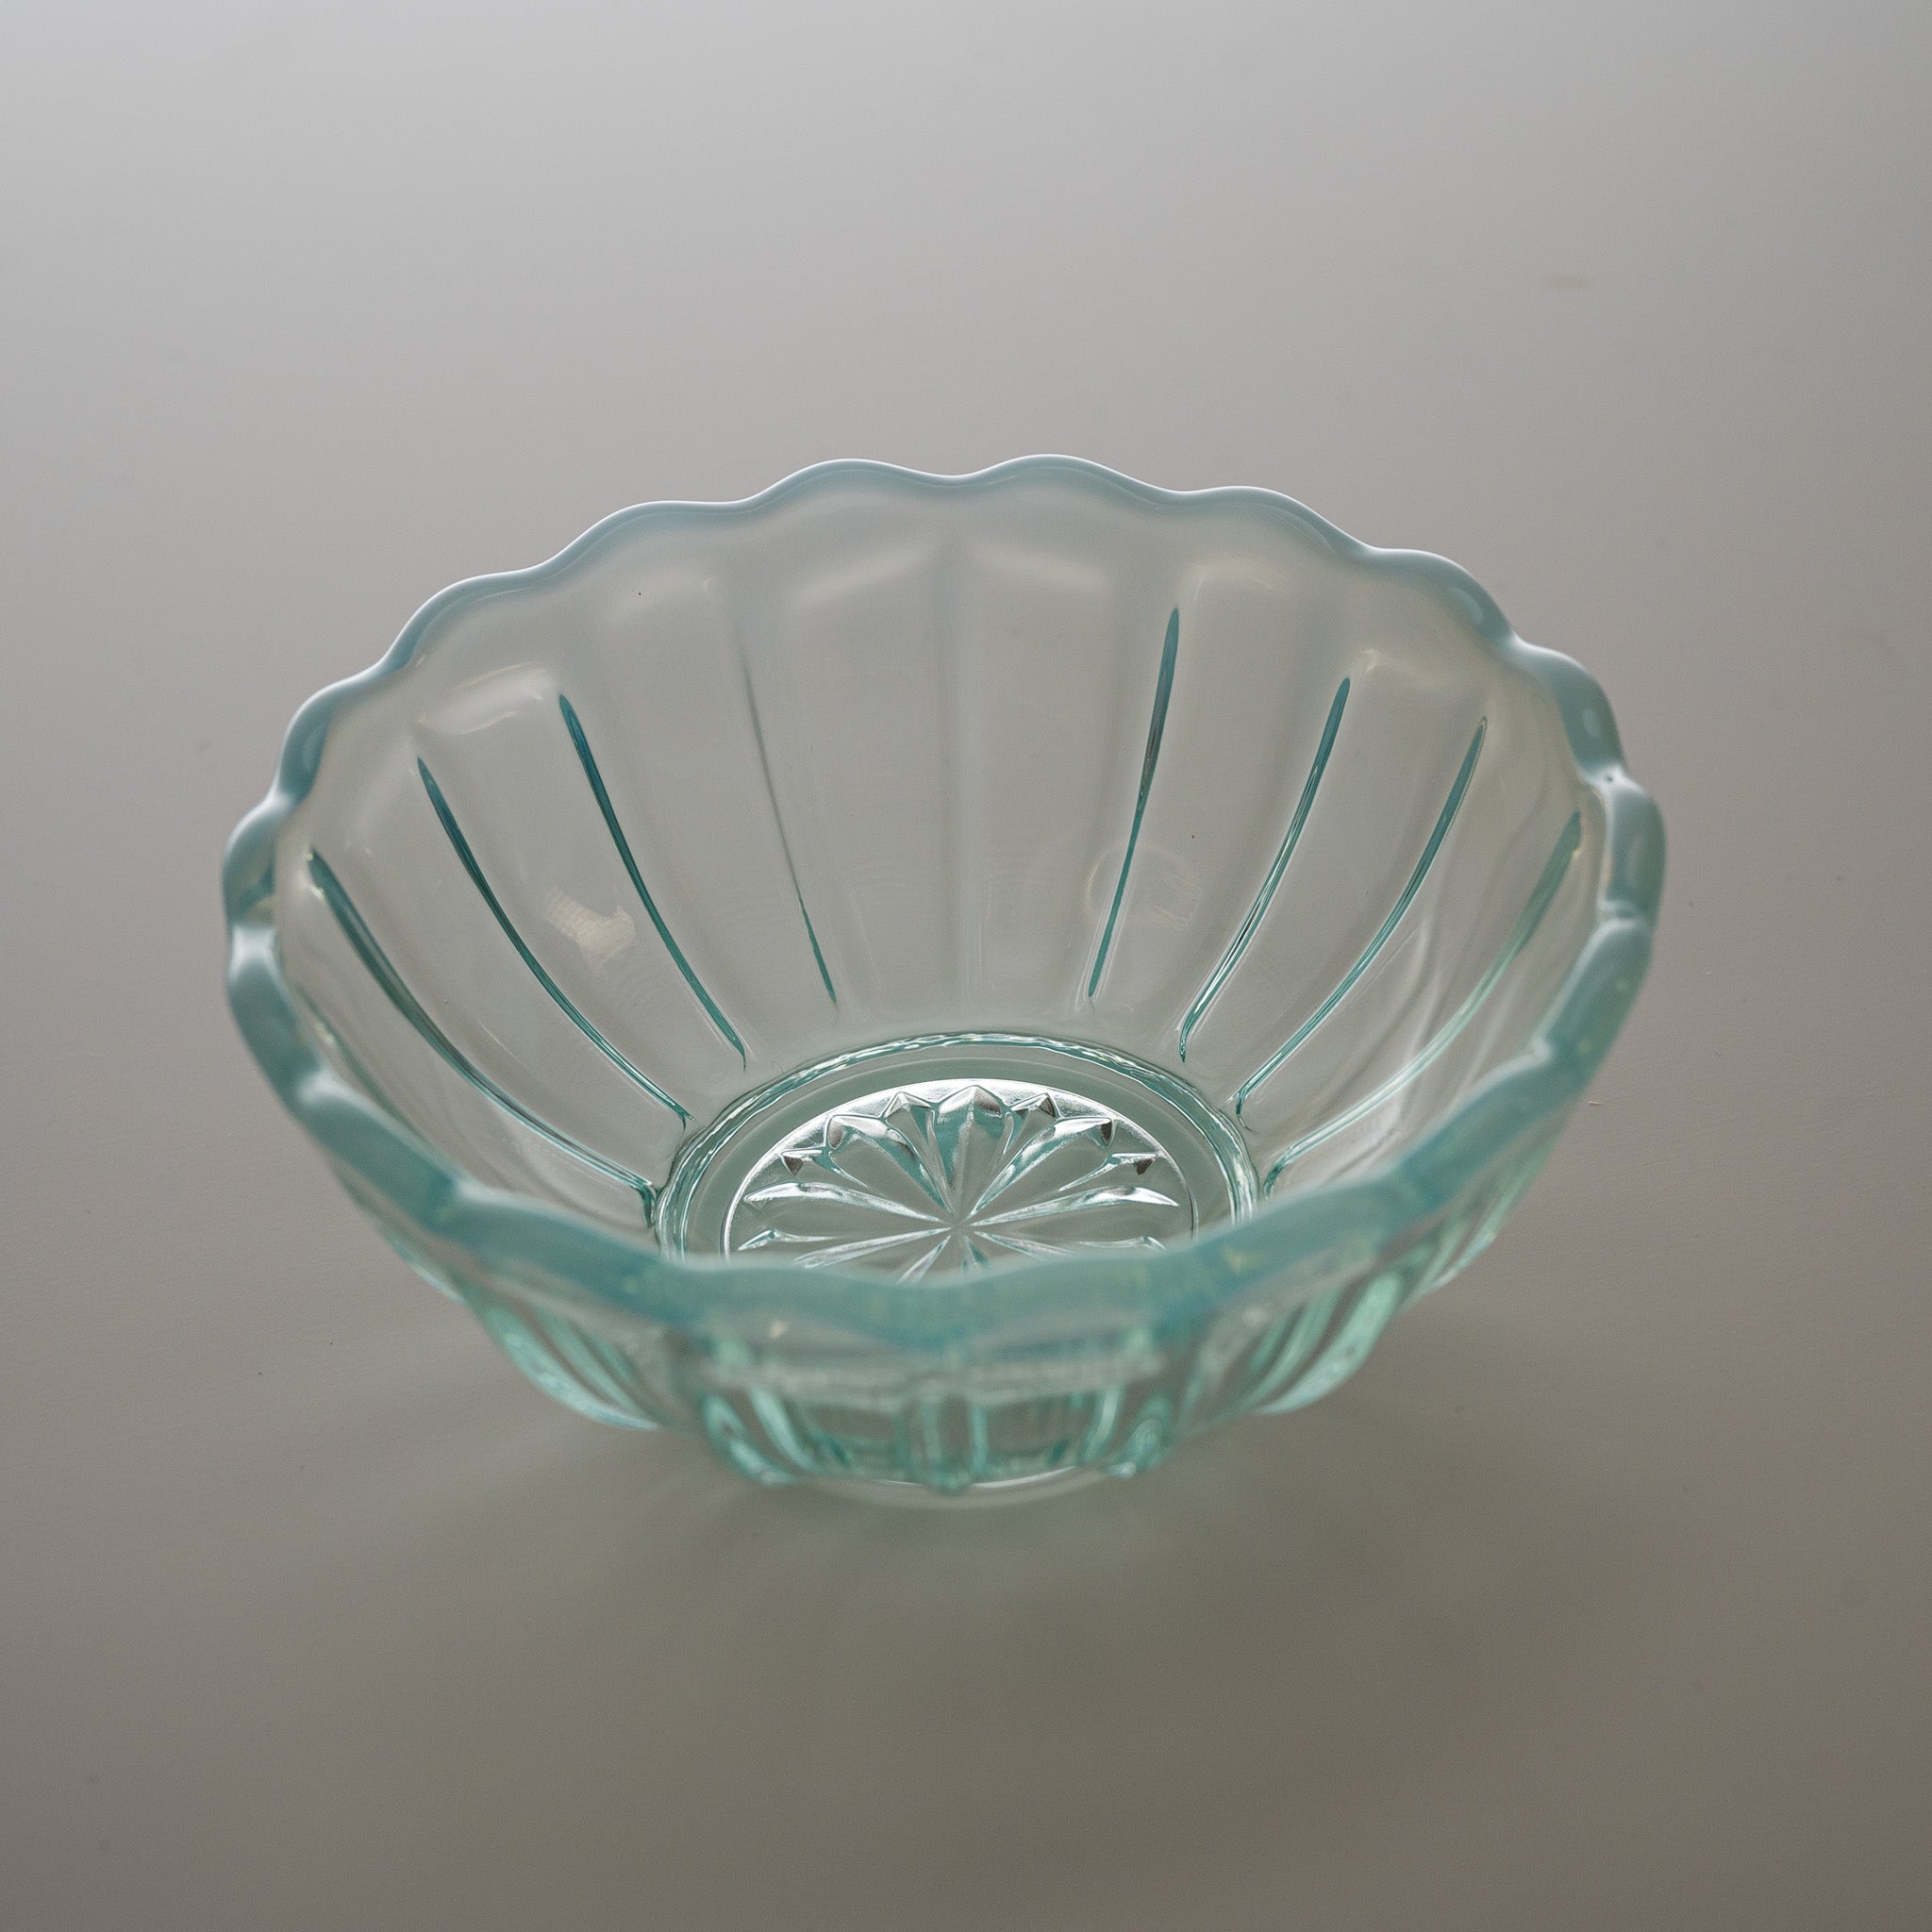 Hirota Glass - Snow Flower Glass Bowl - 12 cm / 廣田硝子 雪の花